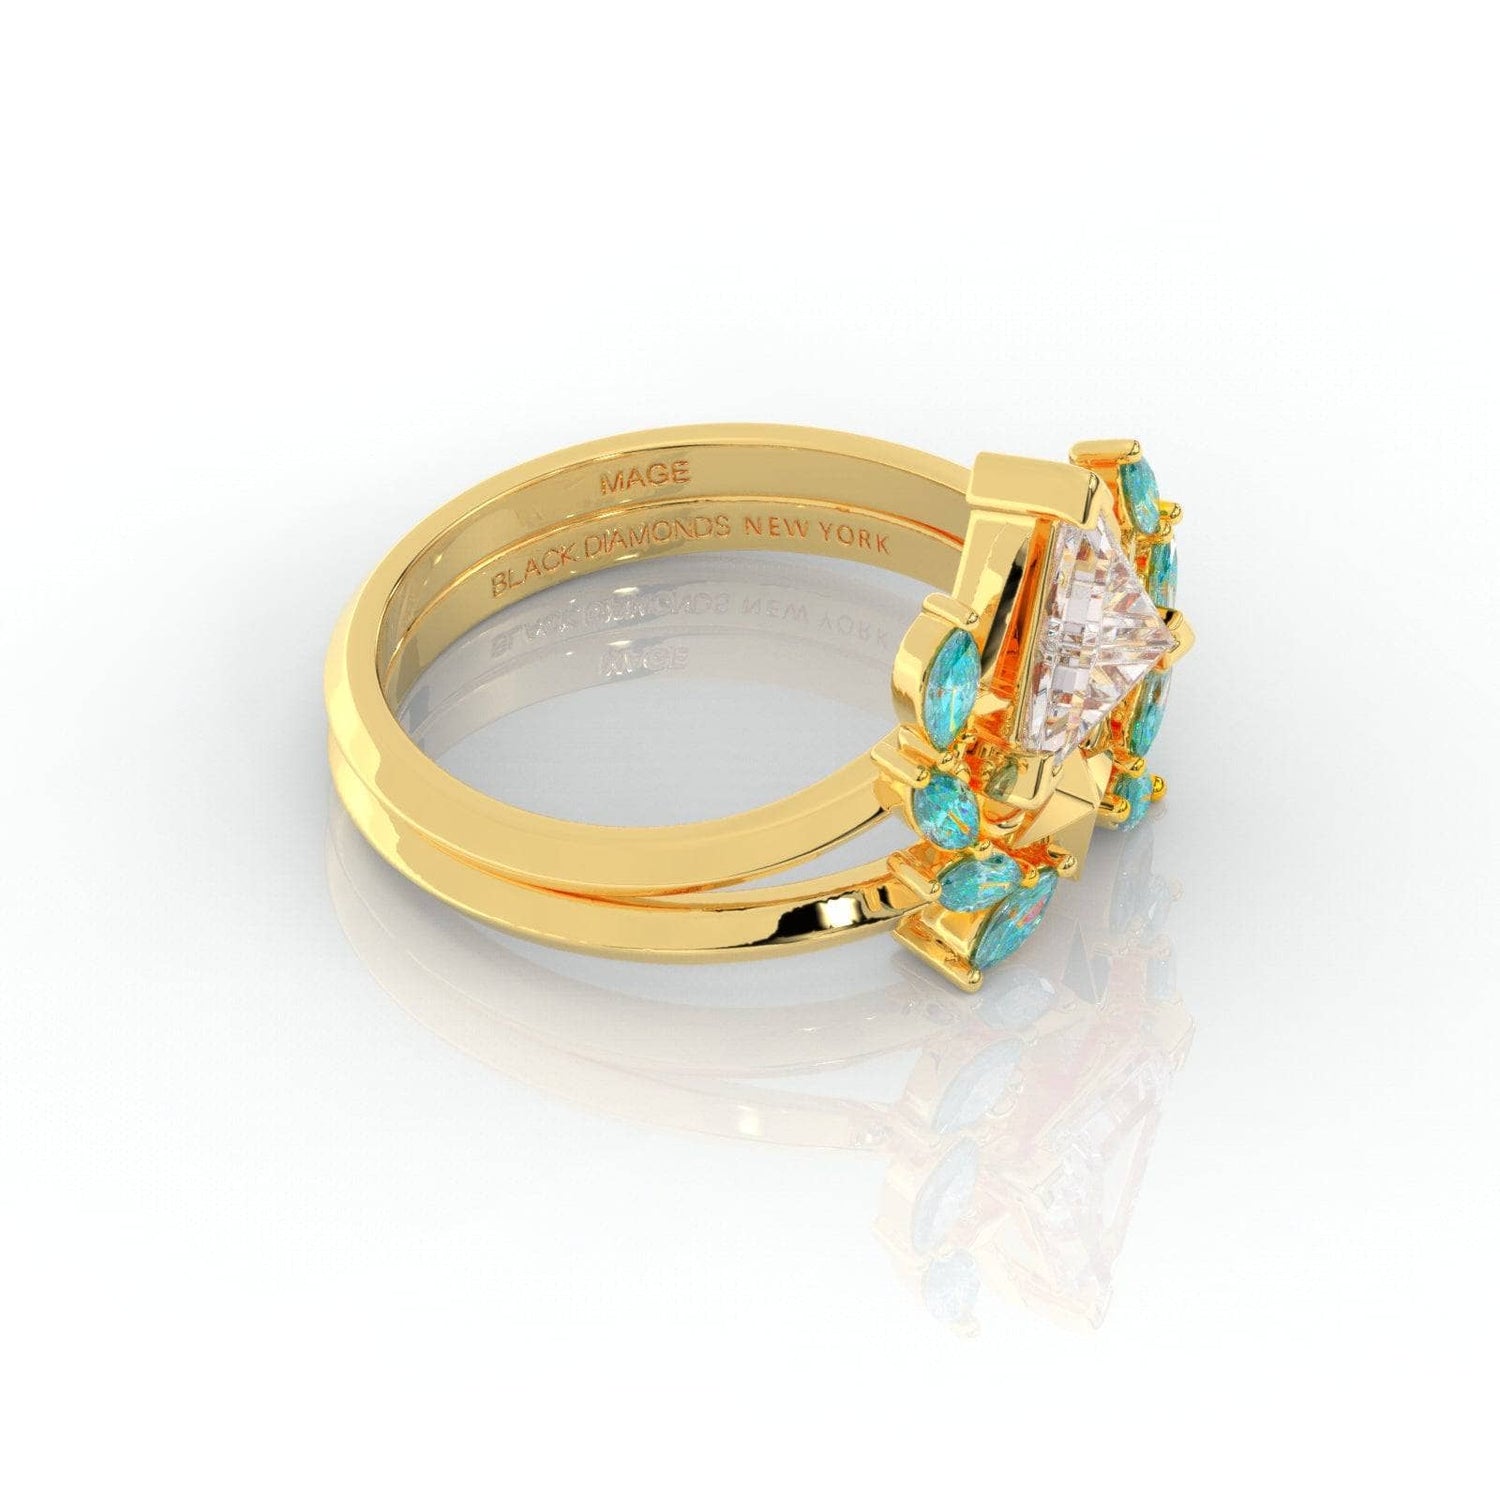 Light Mage Ring Set- 14k Rose Gold Video Game Inspired Rings - Black Diamonds New York